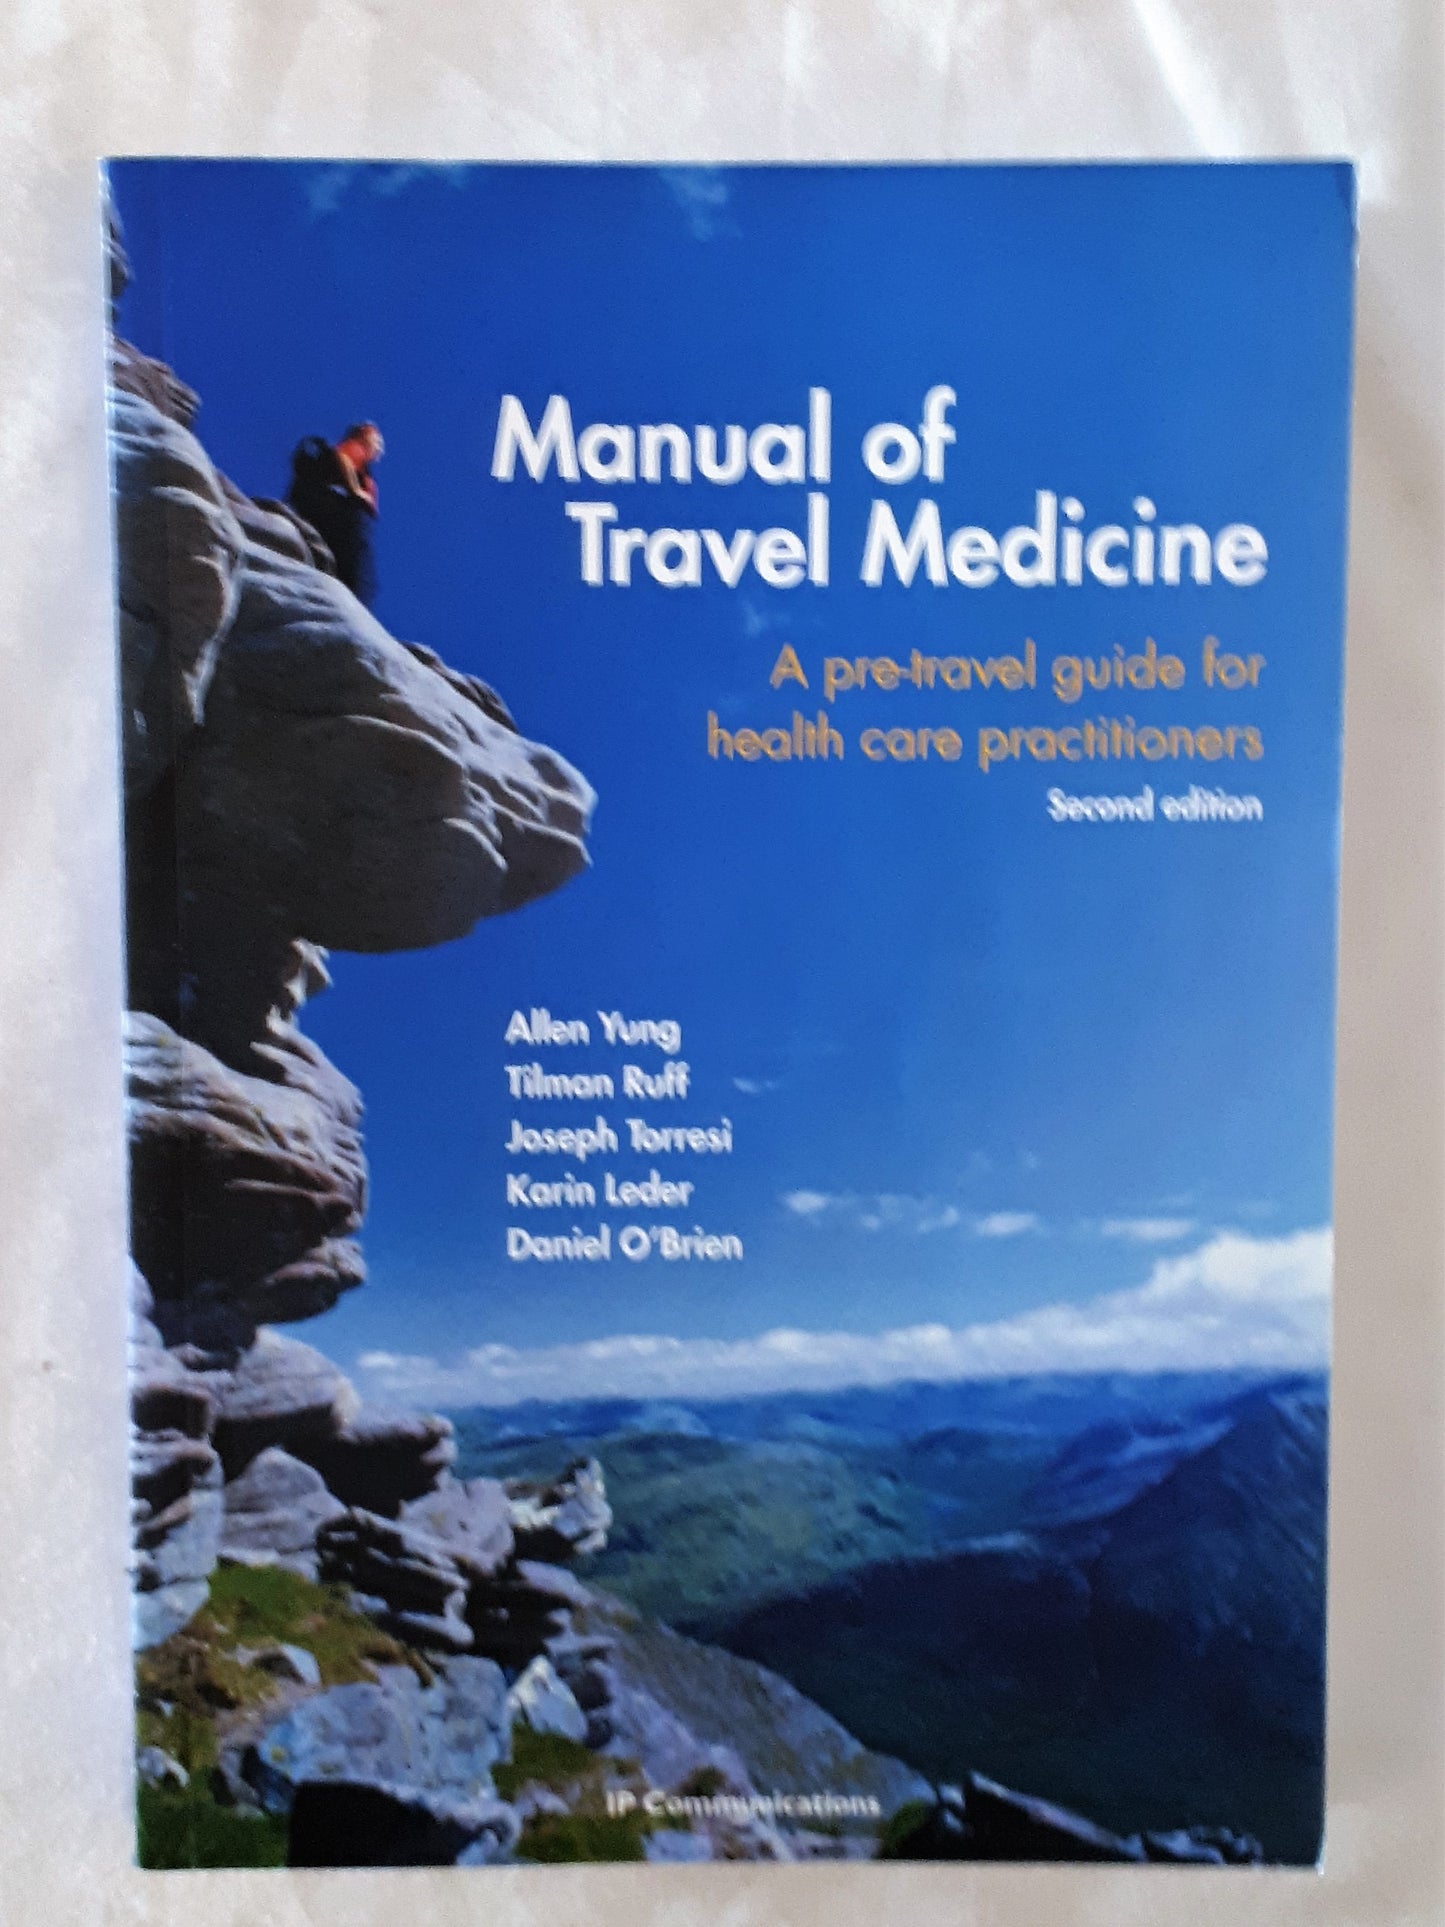 Manual of Travel Medicine by Allen Yung et al.